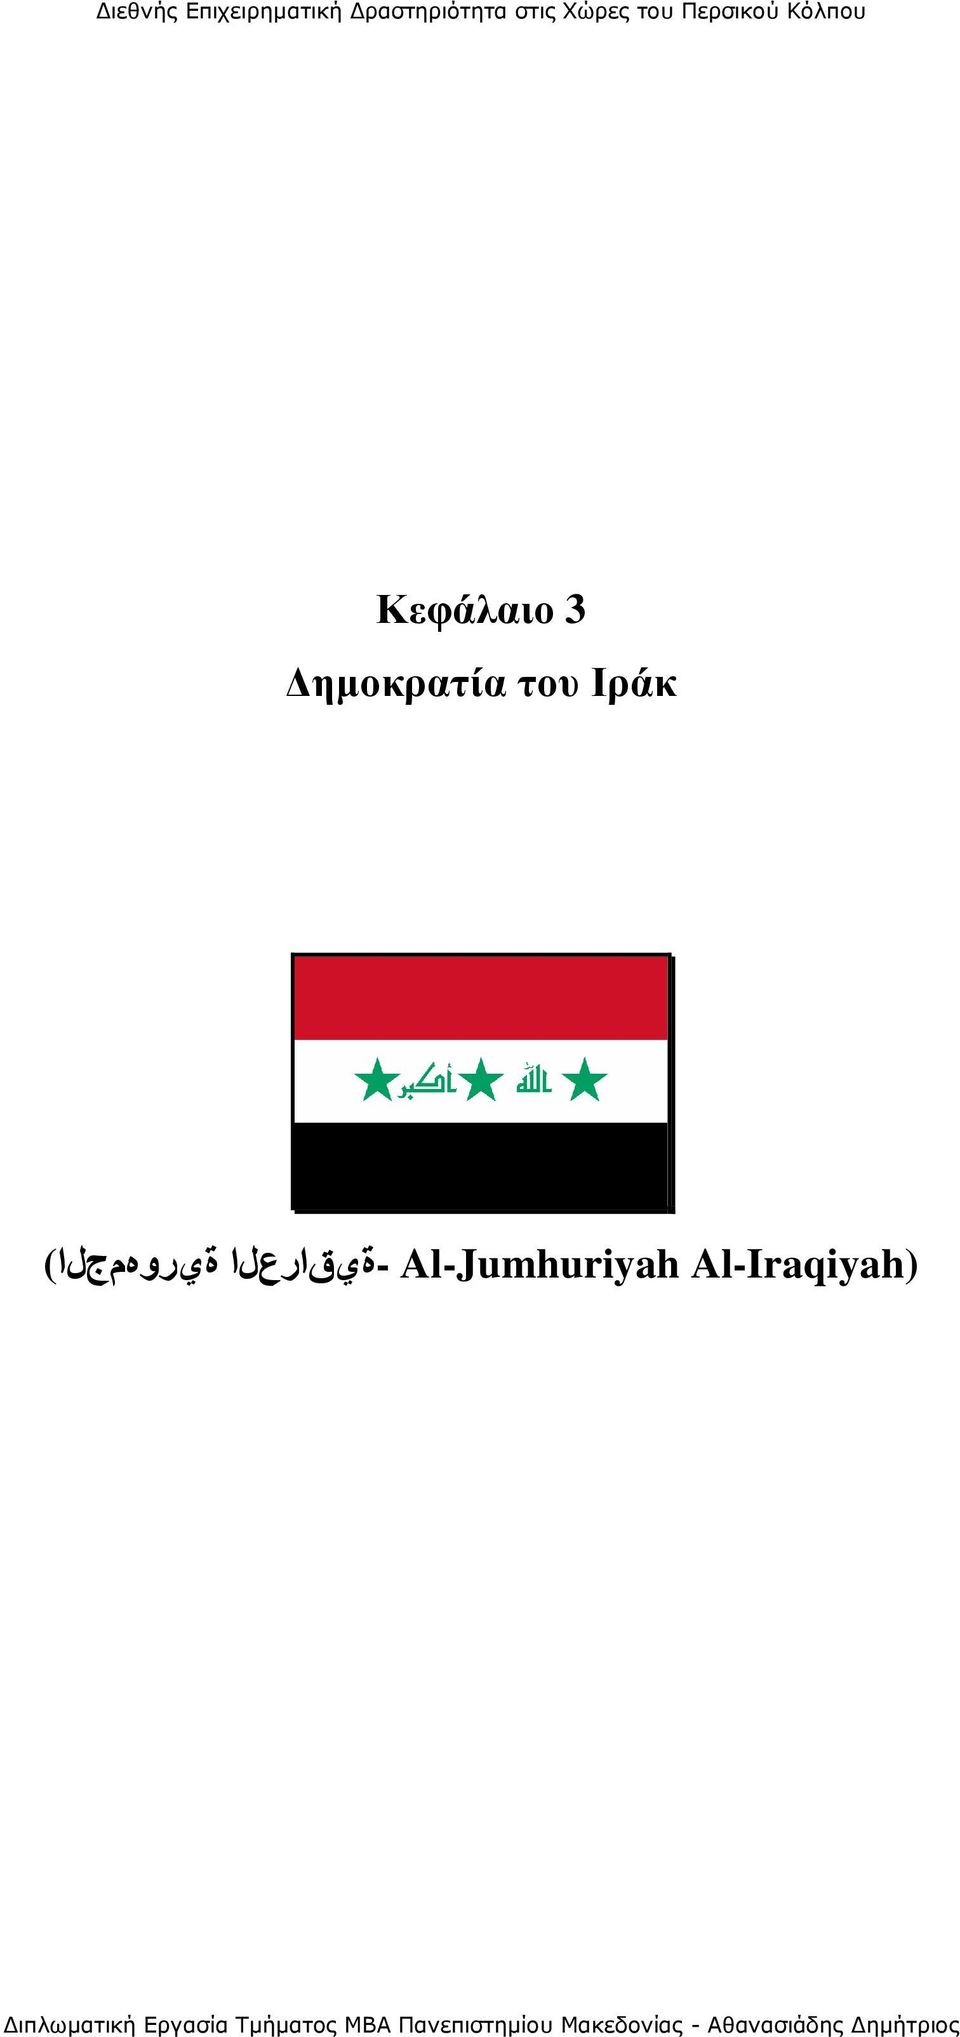 Al-Iraqiyah)